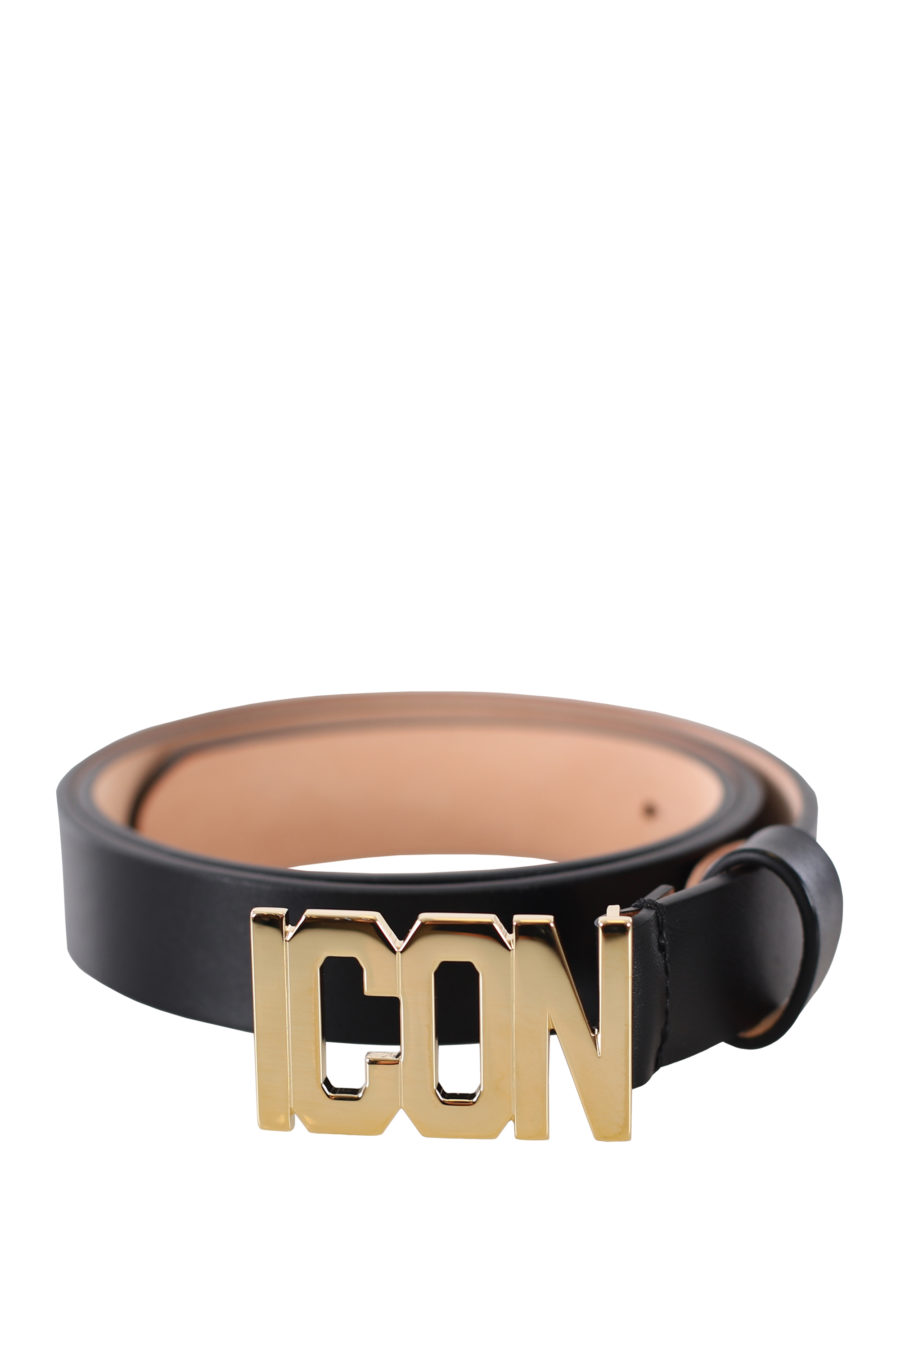 Cinturón negro con logo "icon" dorado - IMG 9412